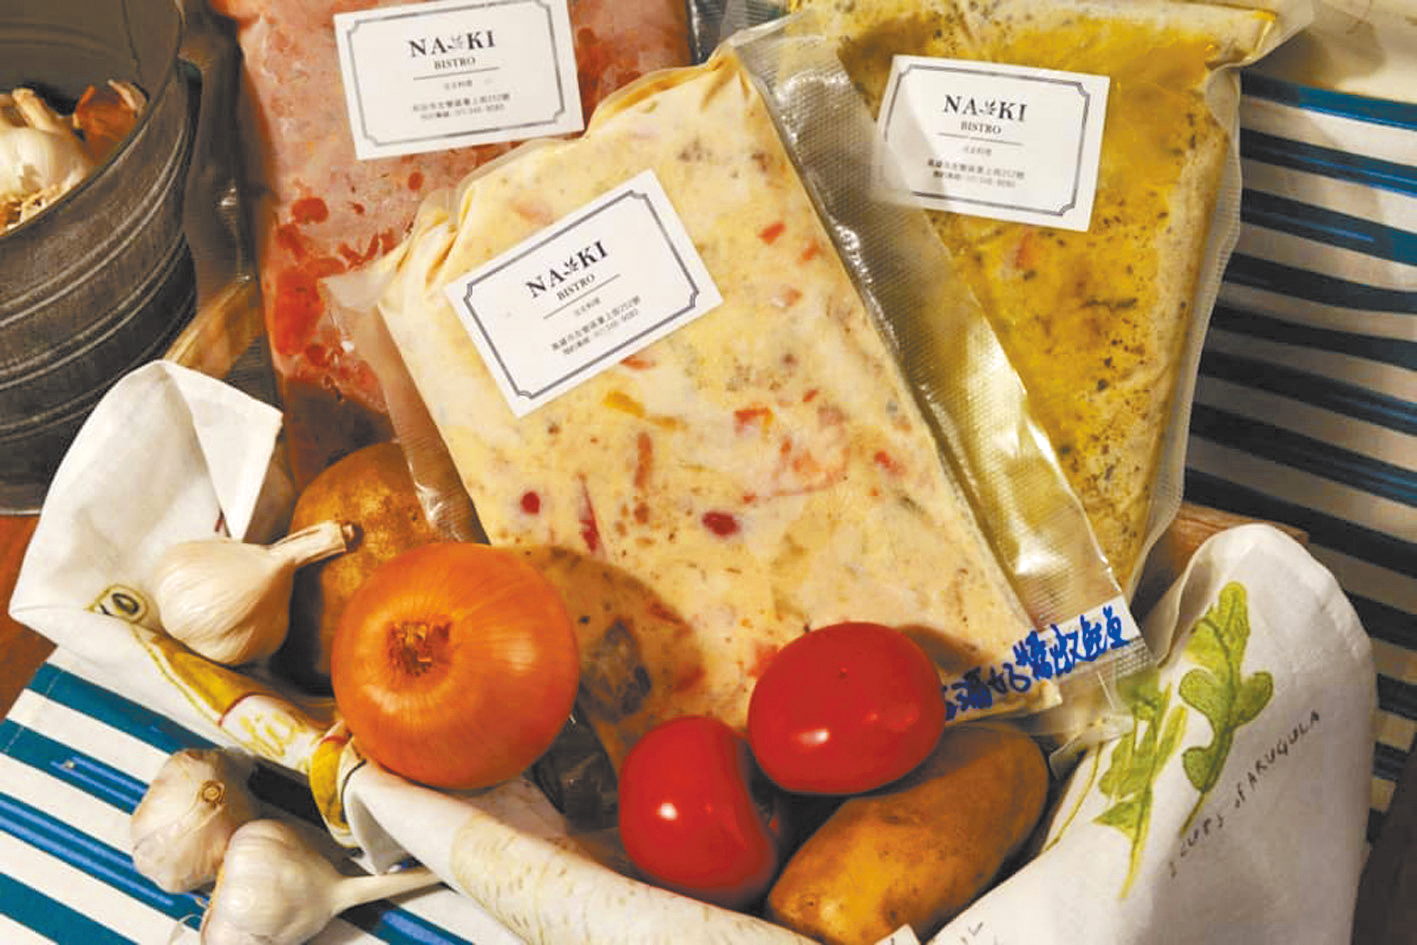 NA KI 藍記義式食坊新鮮現作的美味料理包。